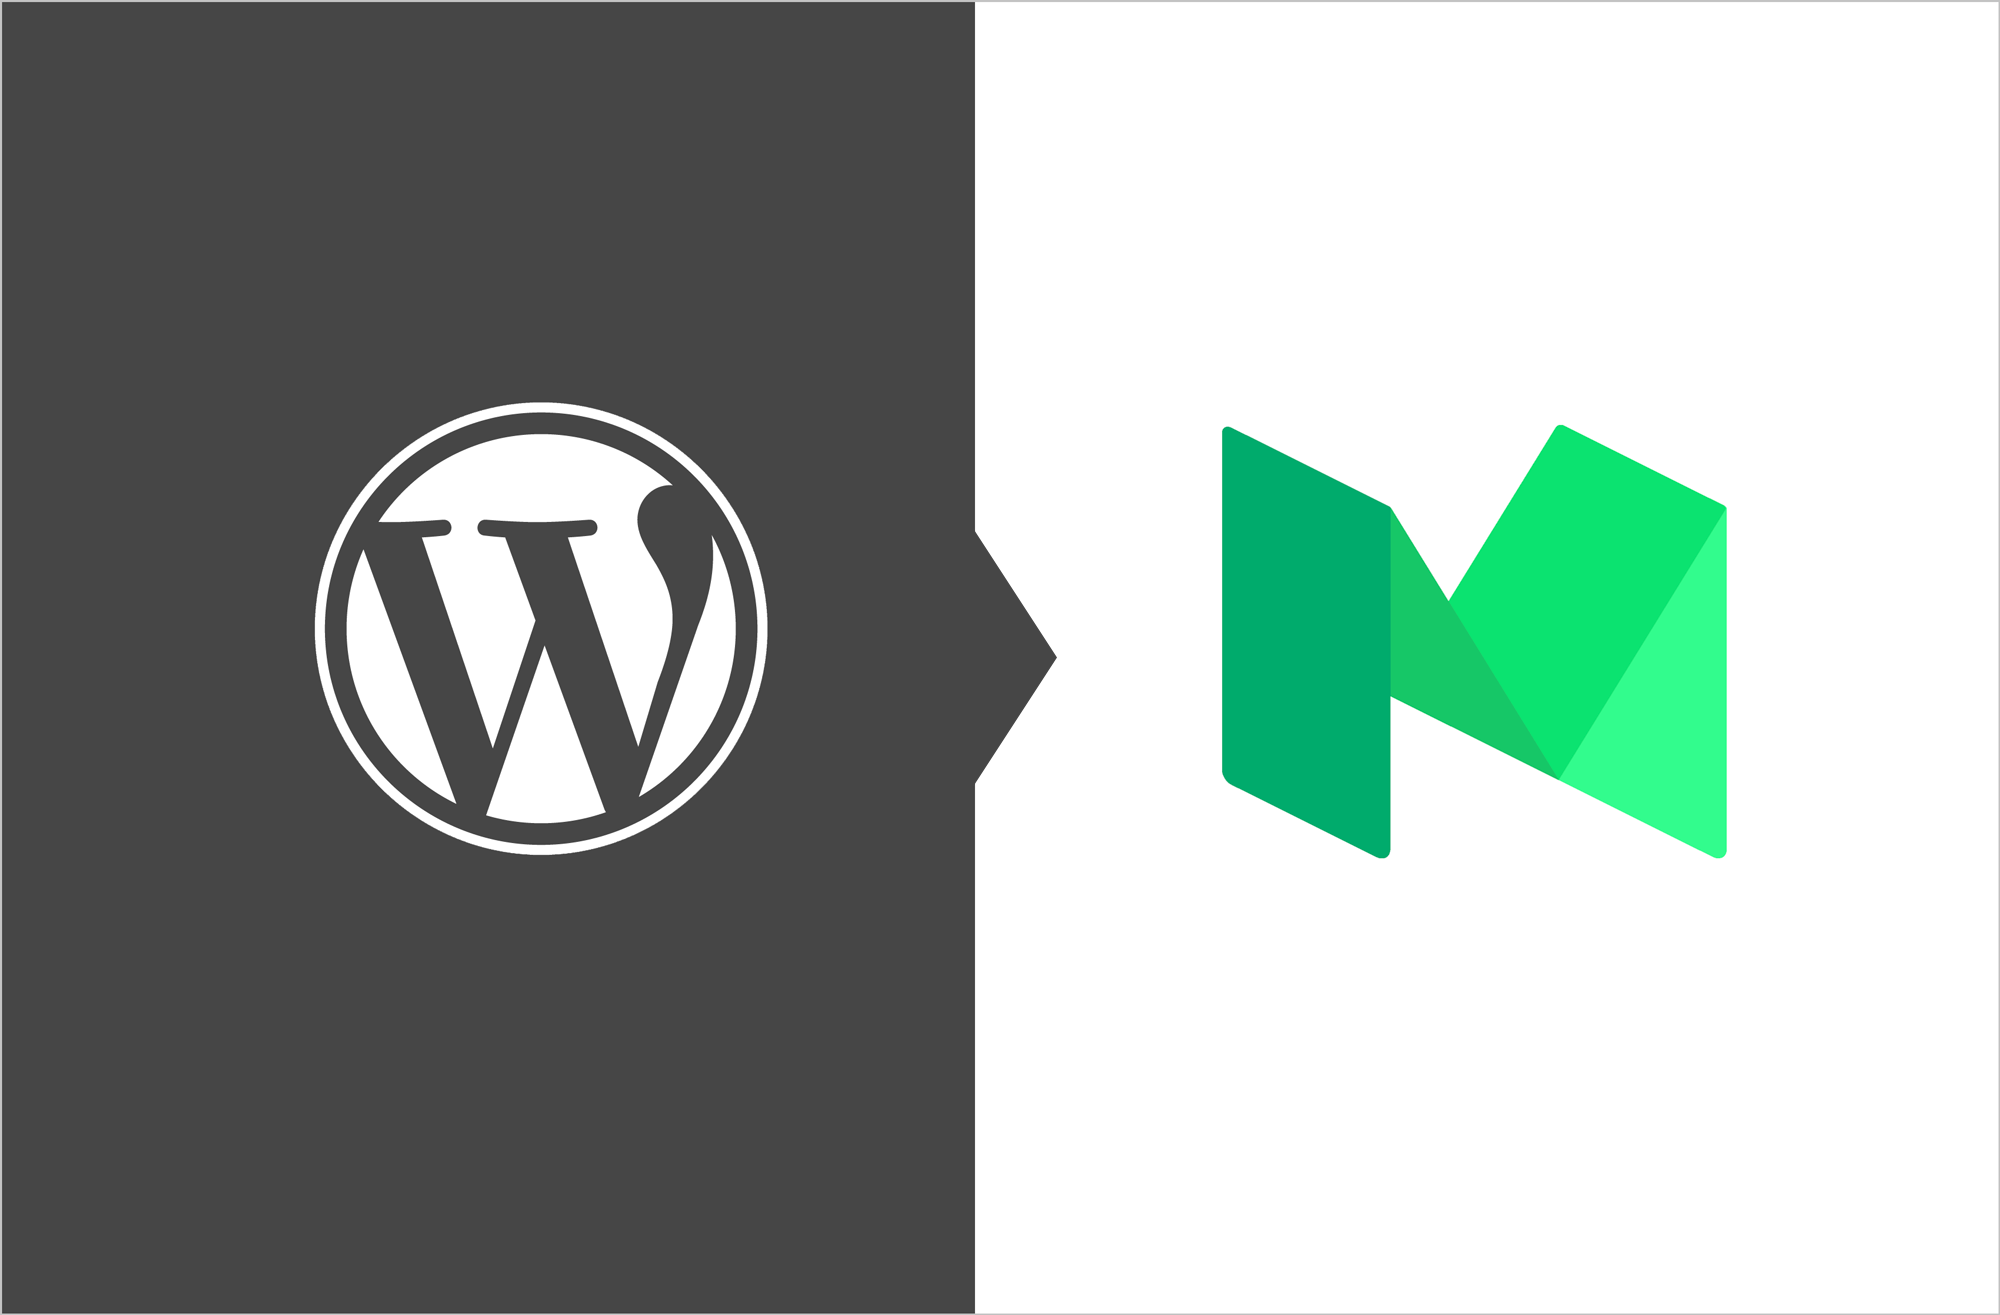 Wordpress vs Medium